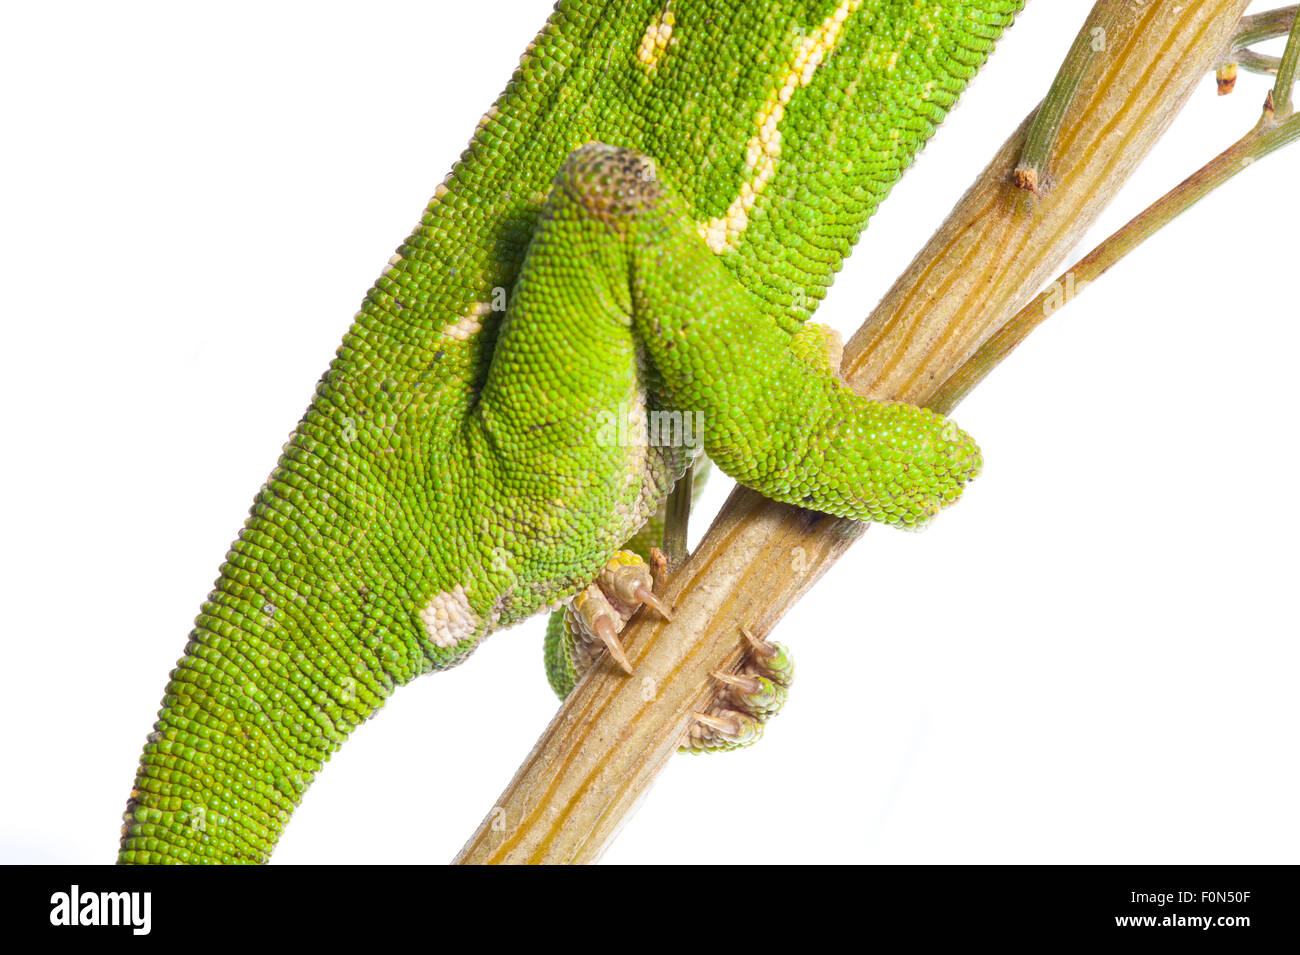 Common chameleon (Chameleo chameleo) hind feet, Huelva, Andalucia, Spain, April 2009 Stock Photo